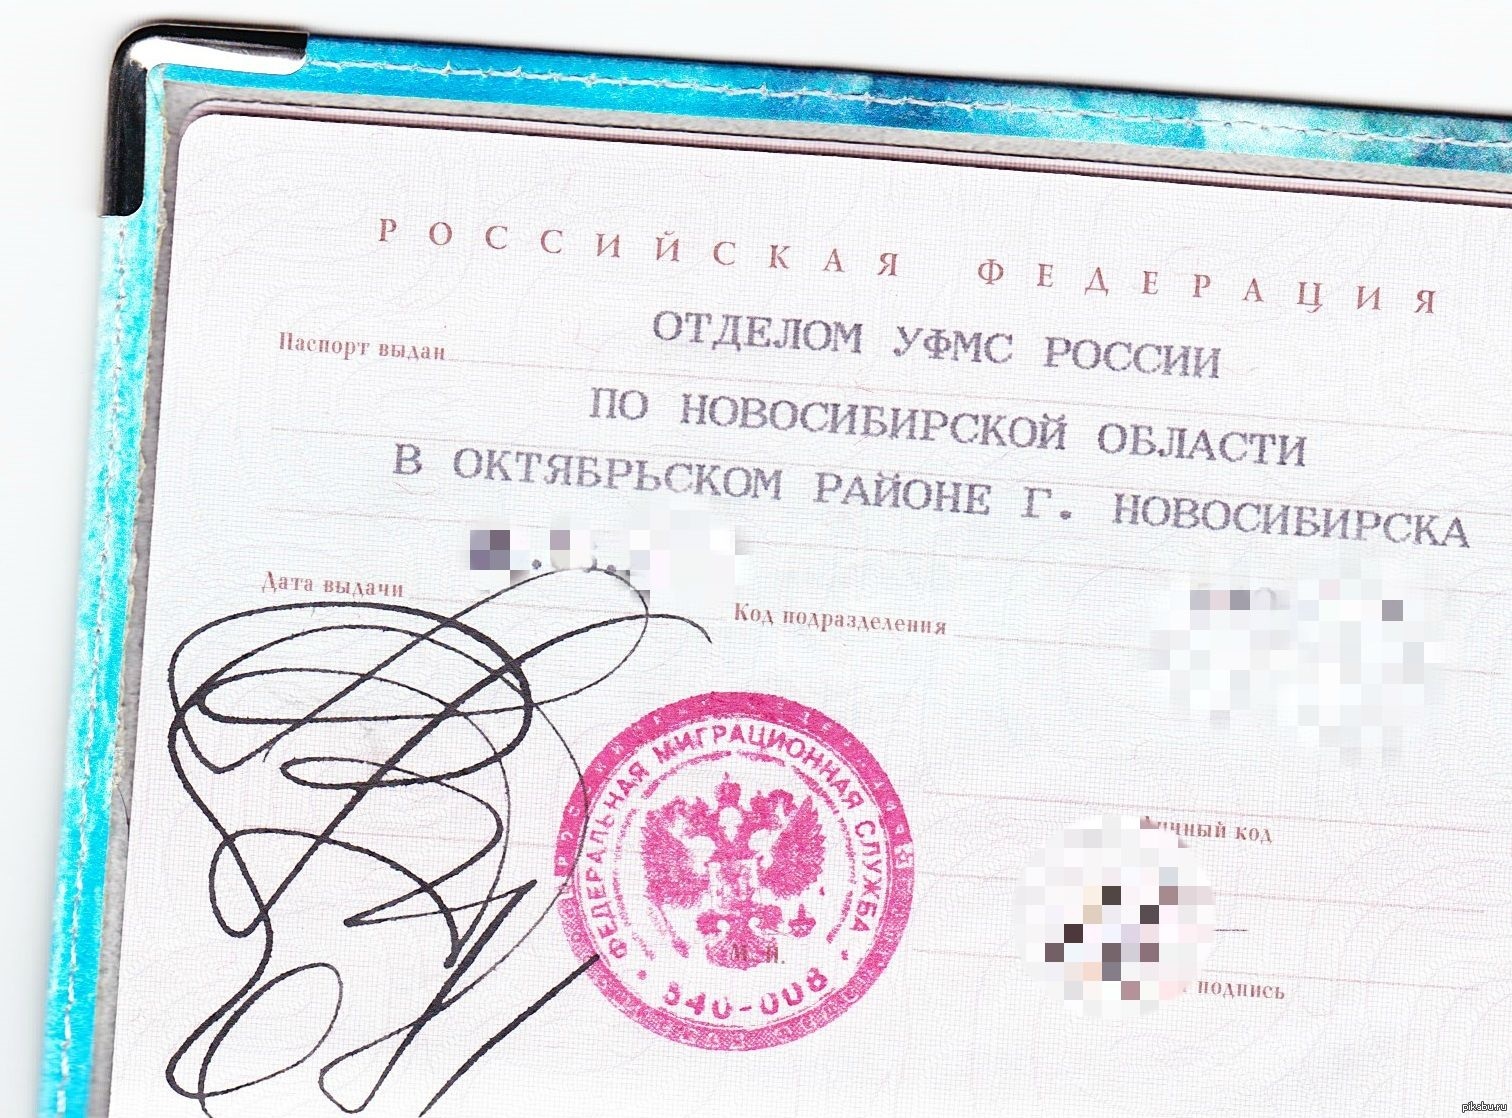 Новосибирск паспортный стол октябрьского. Печать миграционной службы.